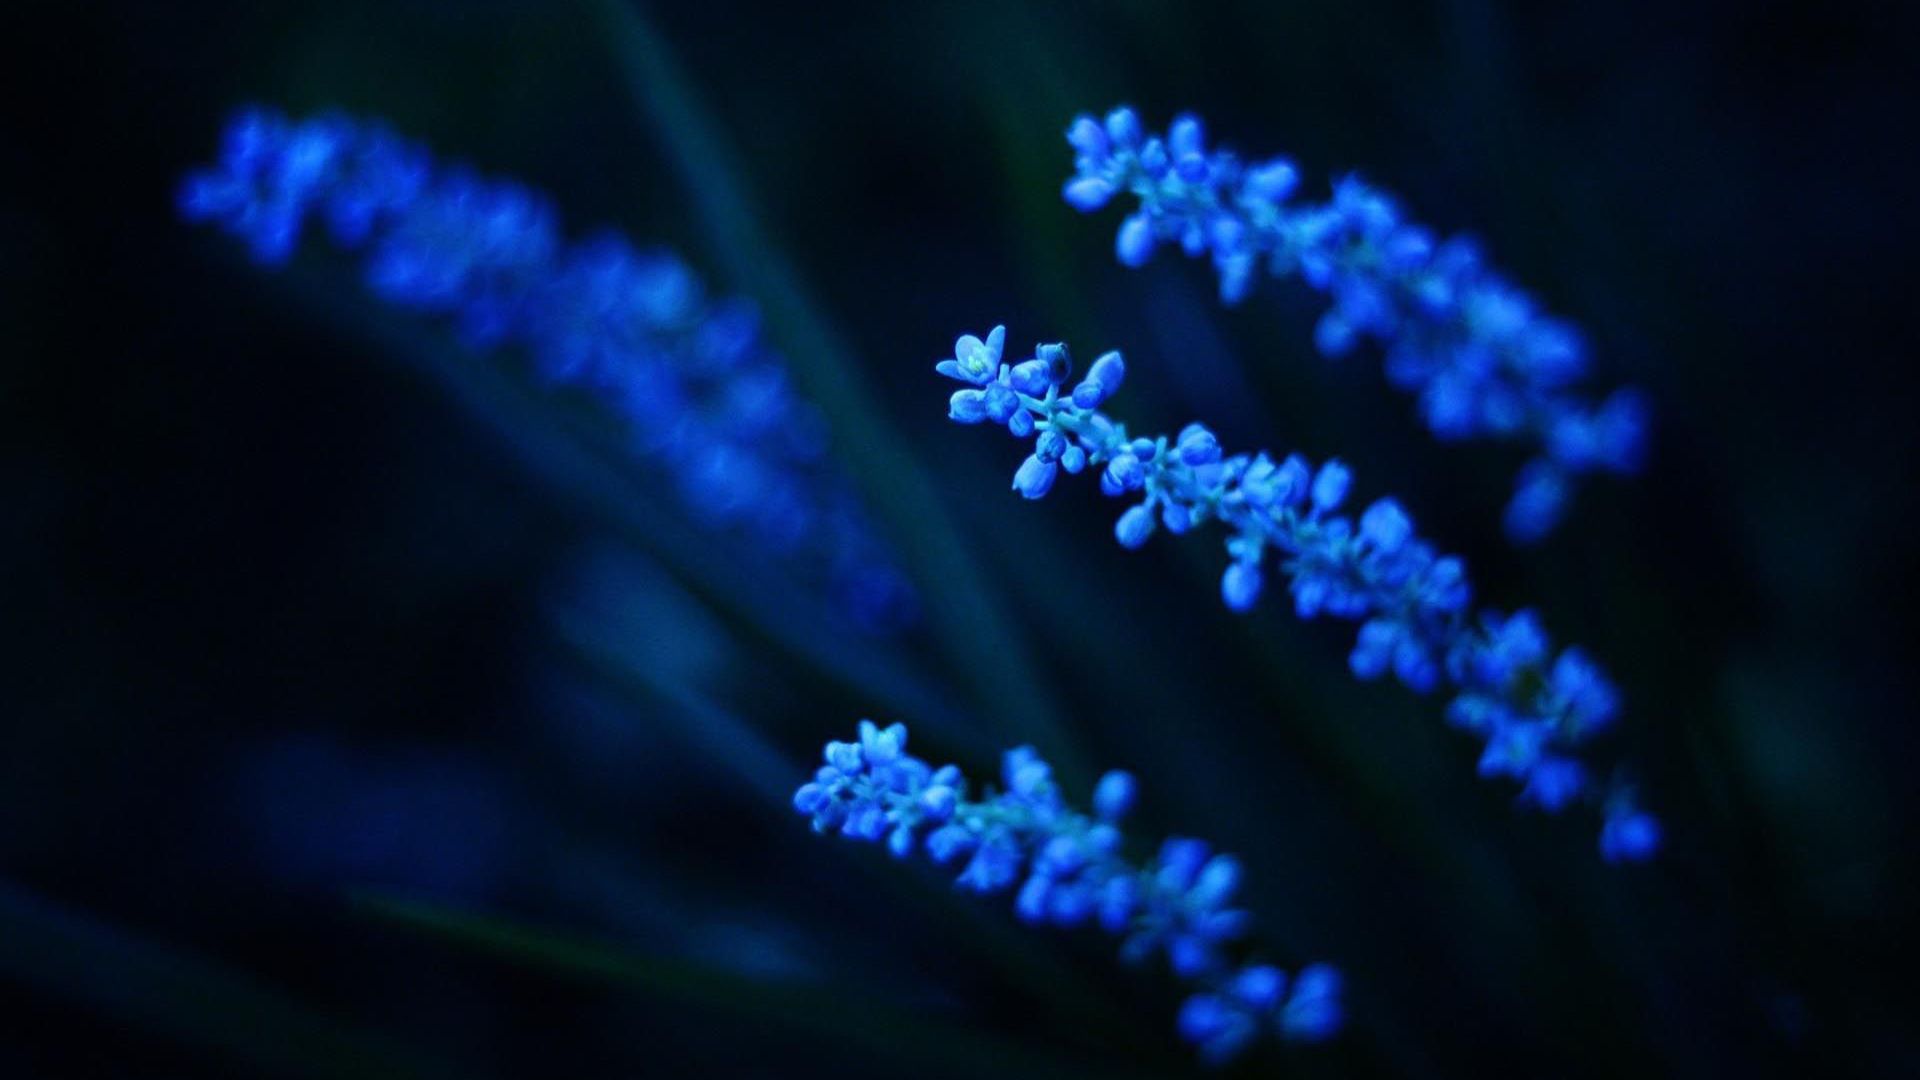 Blue flowers in the dark. - Dark blue, navy blue